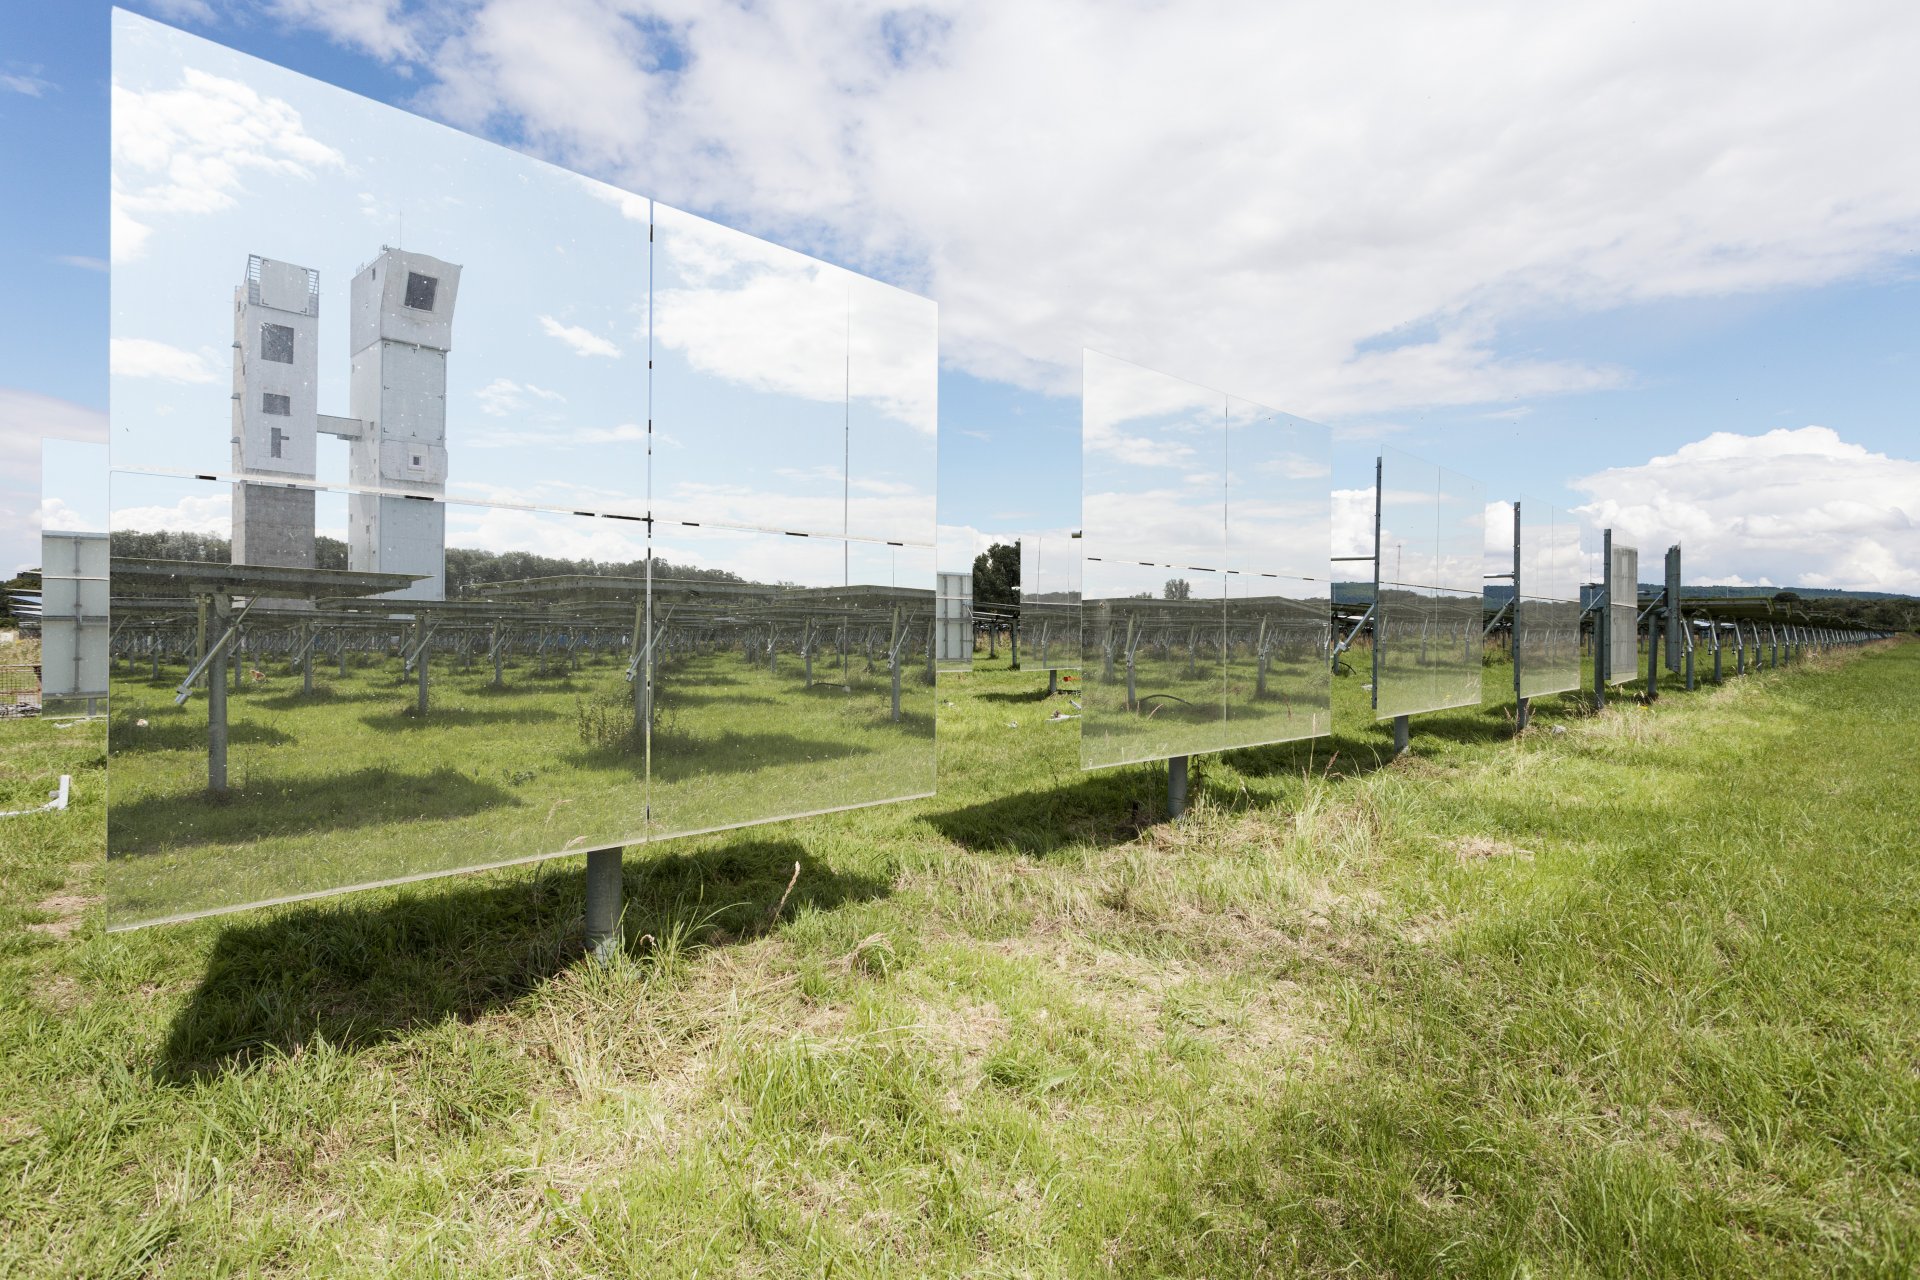 المنشأة الشمسية البالغة مساحتها 80,000 متر مربع في يولي